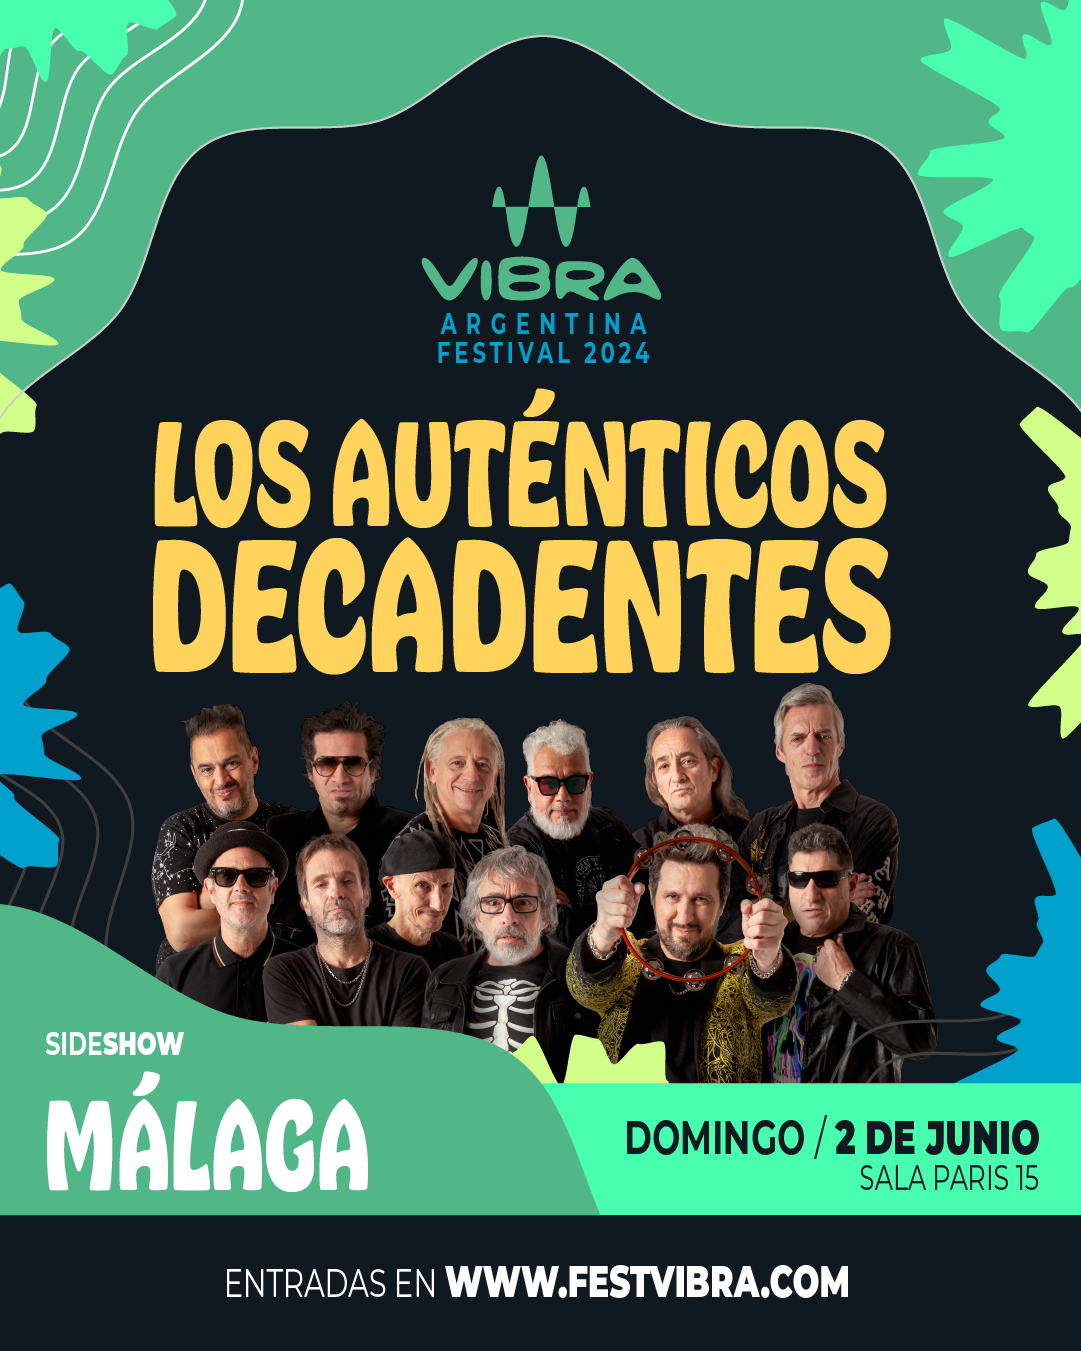 VIBRA ARGENTINA FESTIVAL 2024 en MALAGA, sala paris 15, Domingo 2 Junio Los Autenticos Decadentes. Entradas y Info: www.festvibra.com